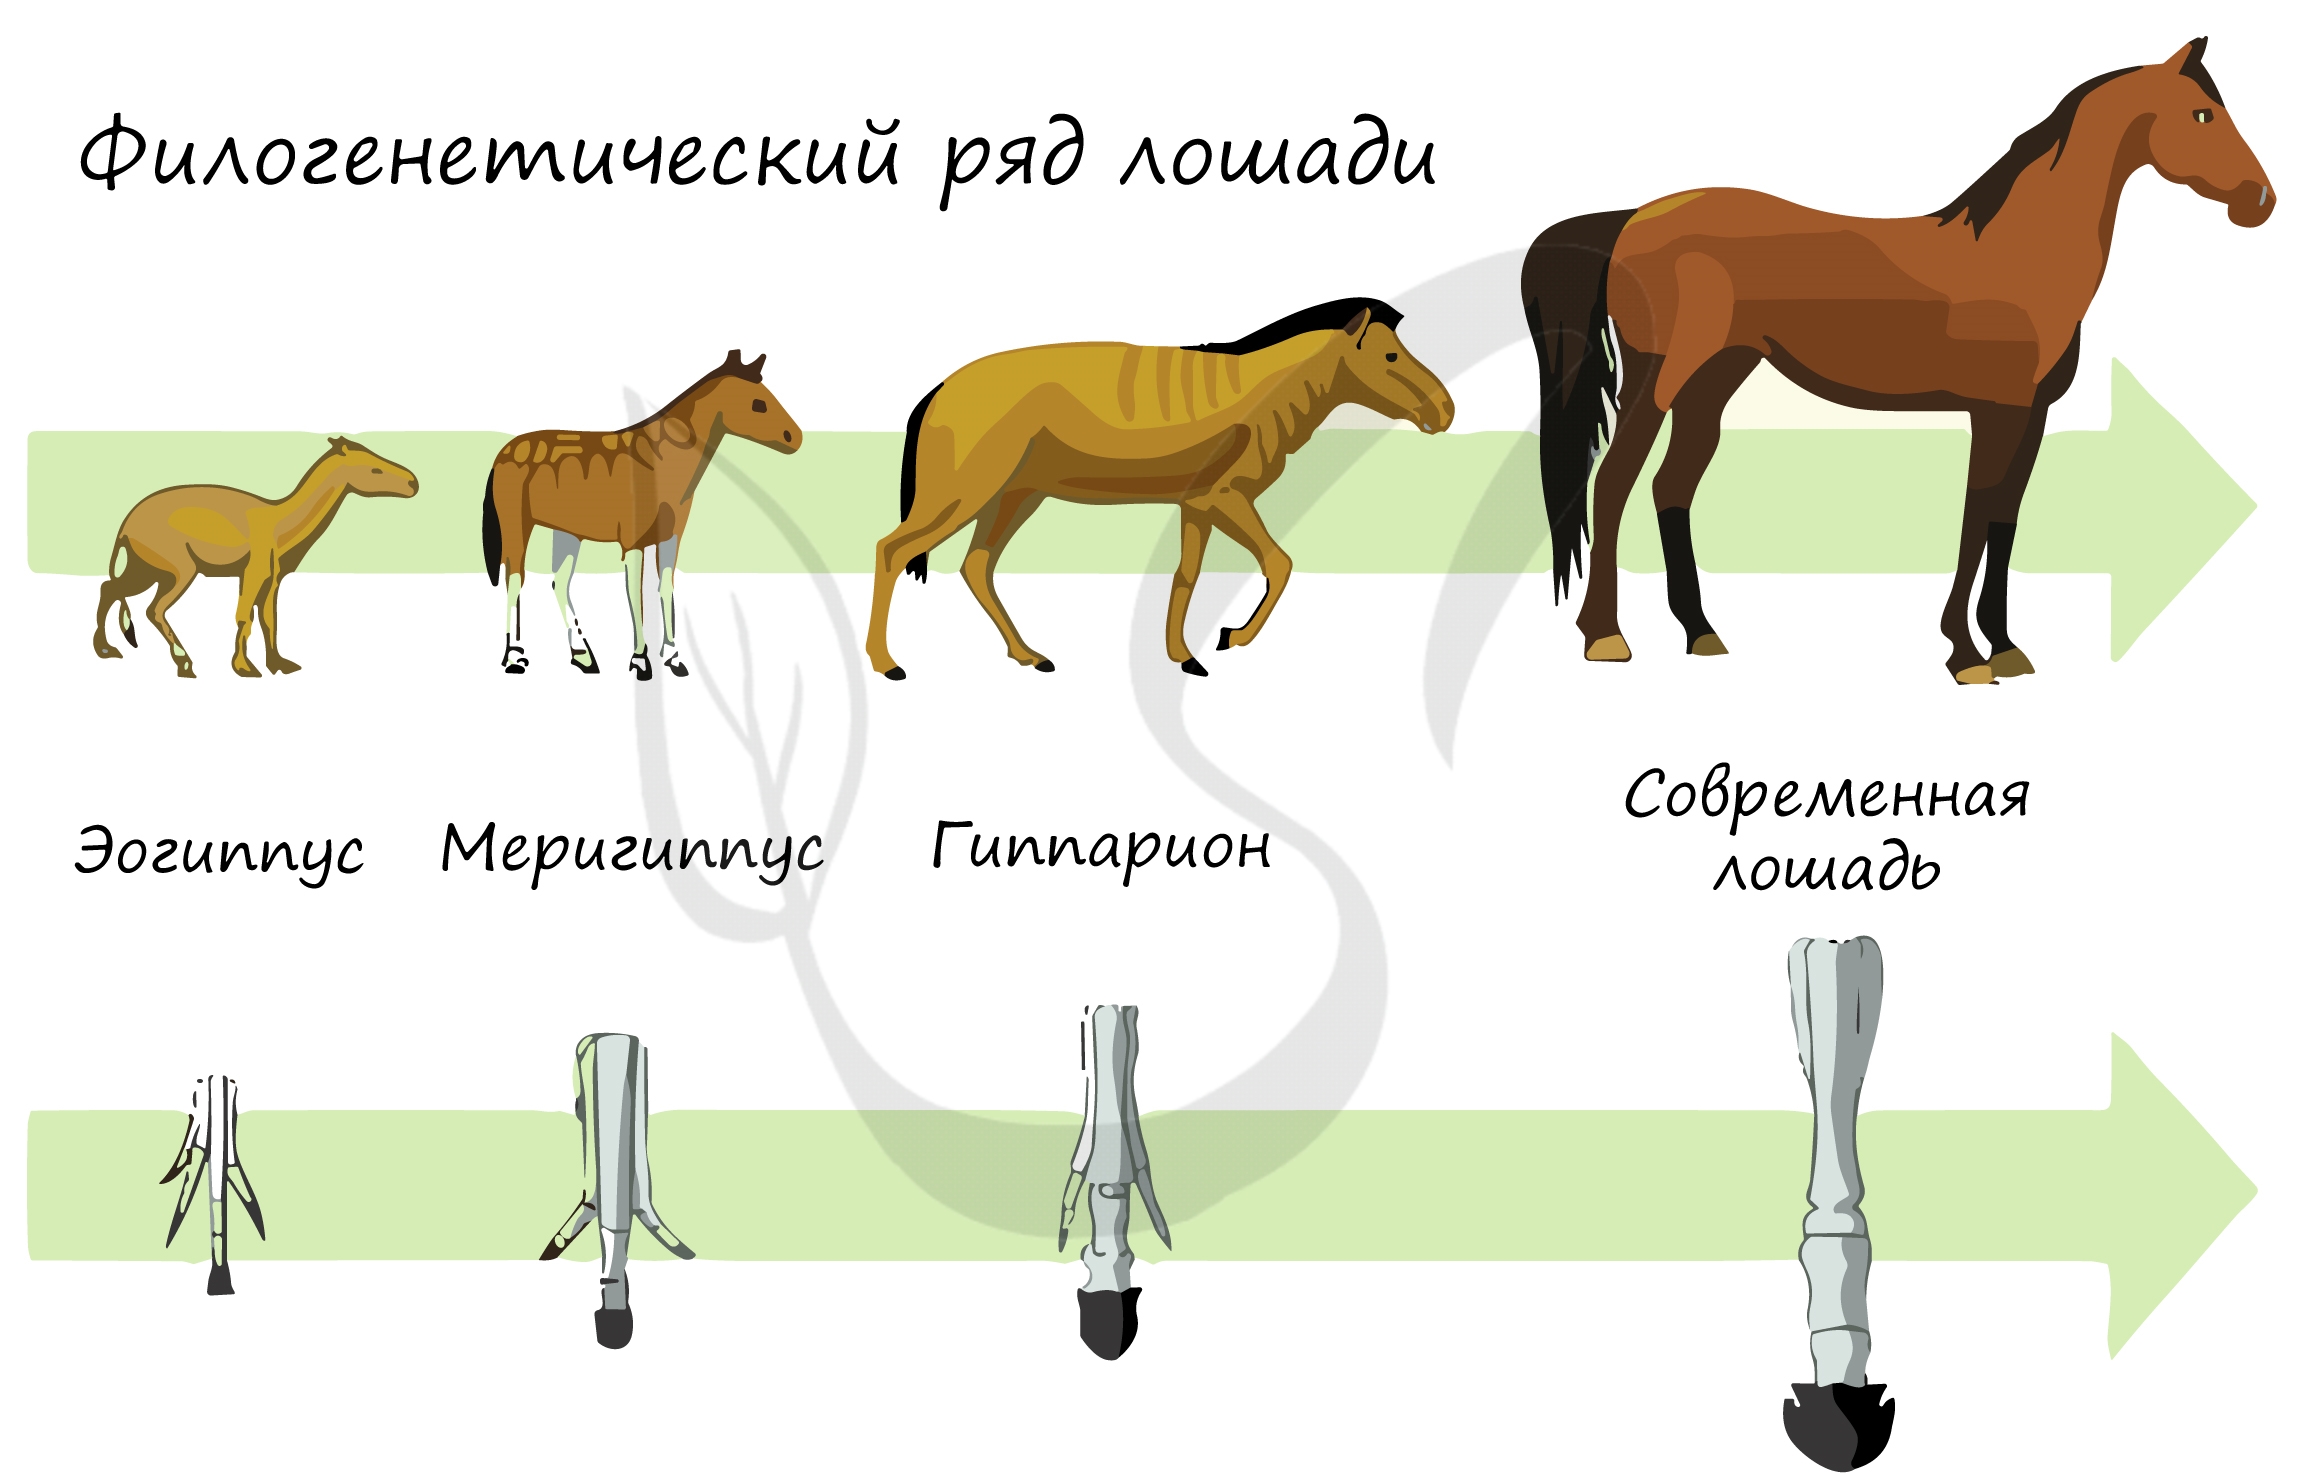 Изучение переходных форм метод. Филогенетический ряд конечностей лошади. Эволюция филогенетический ряд лошади. Филоґенетический РЧД лошади. Филогенетические ряды лошади описал.